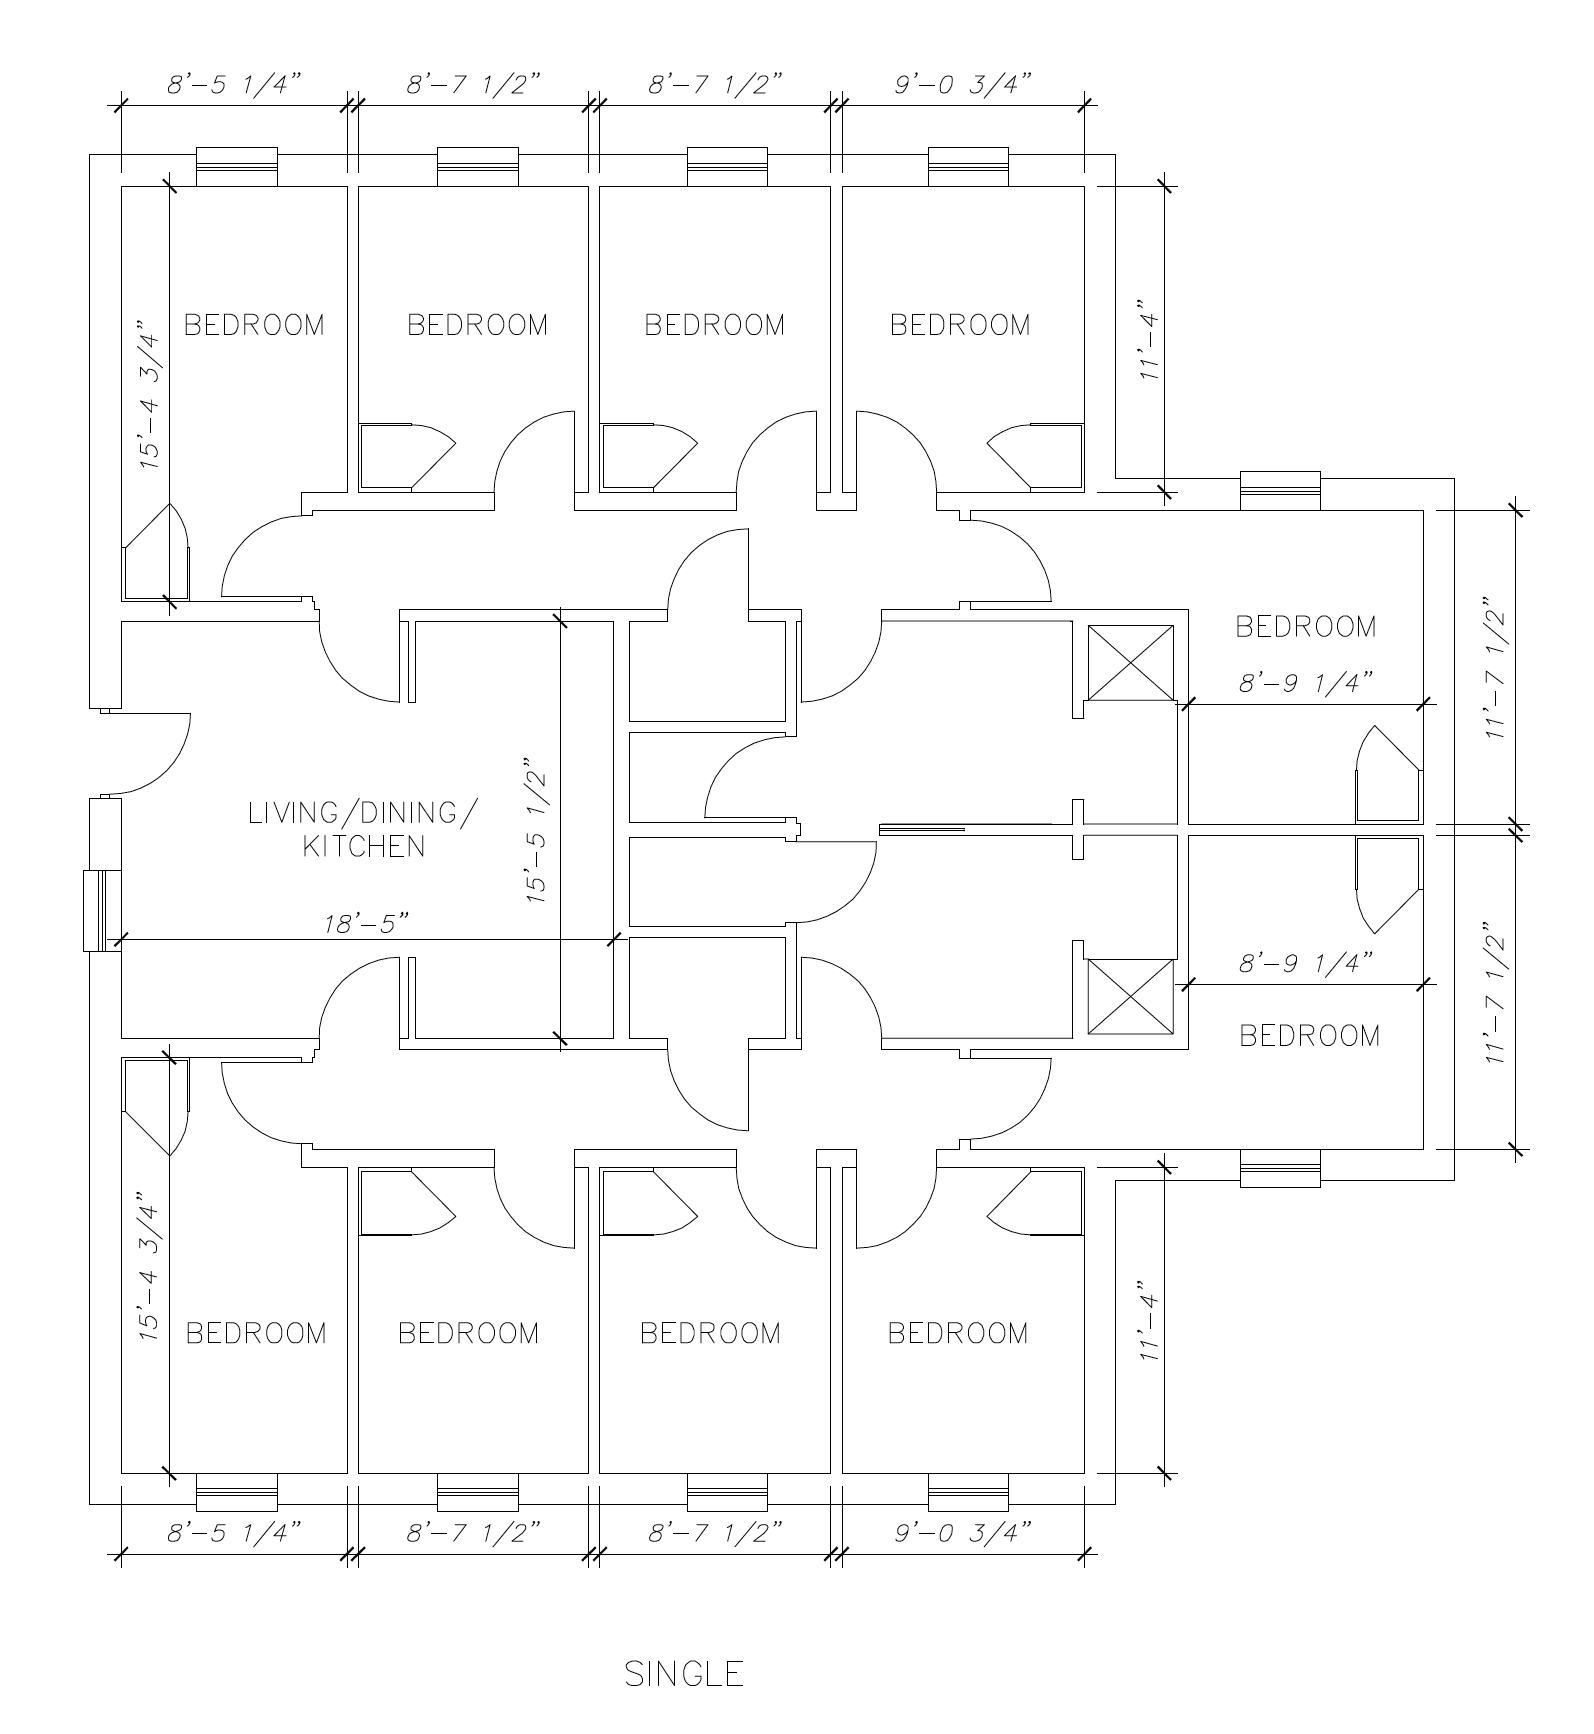 University Suites - Single - Floorplan